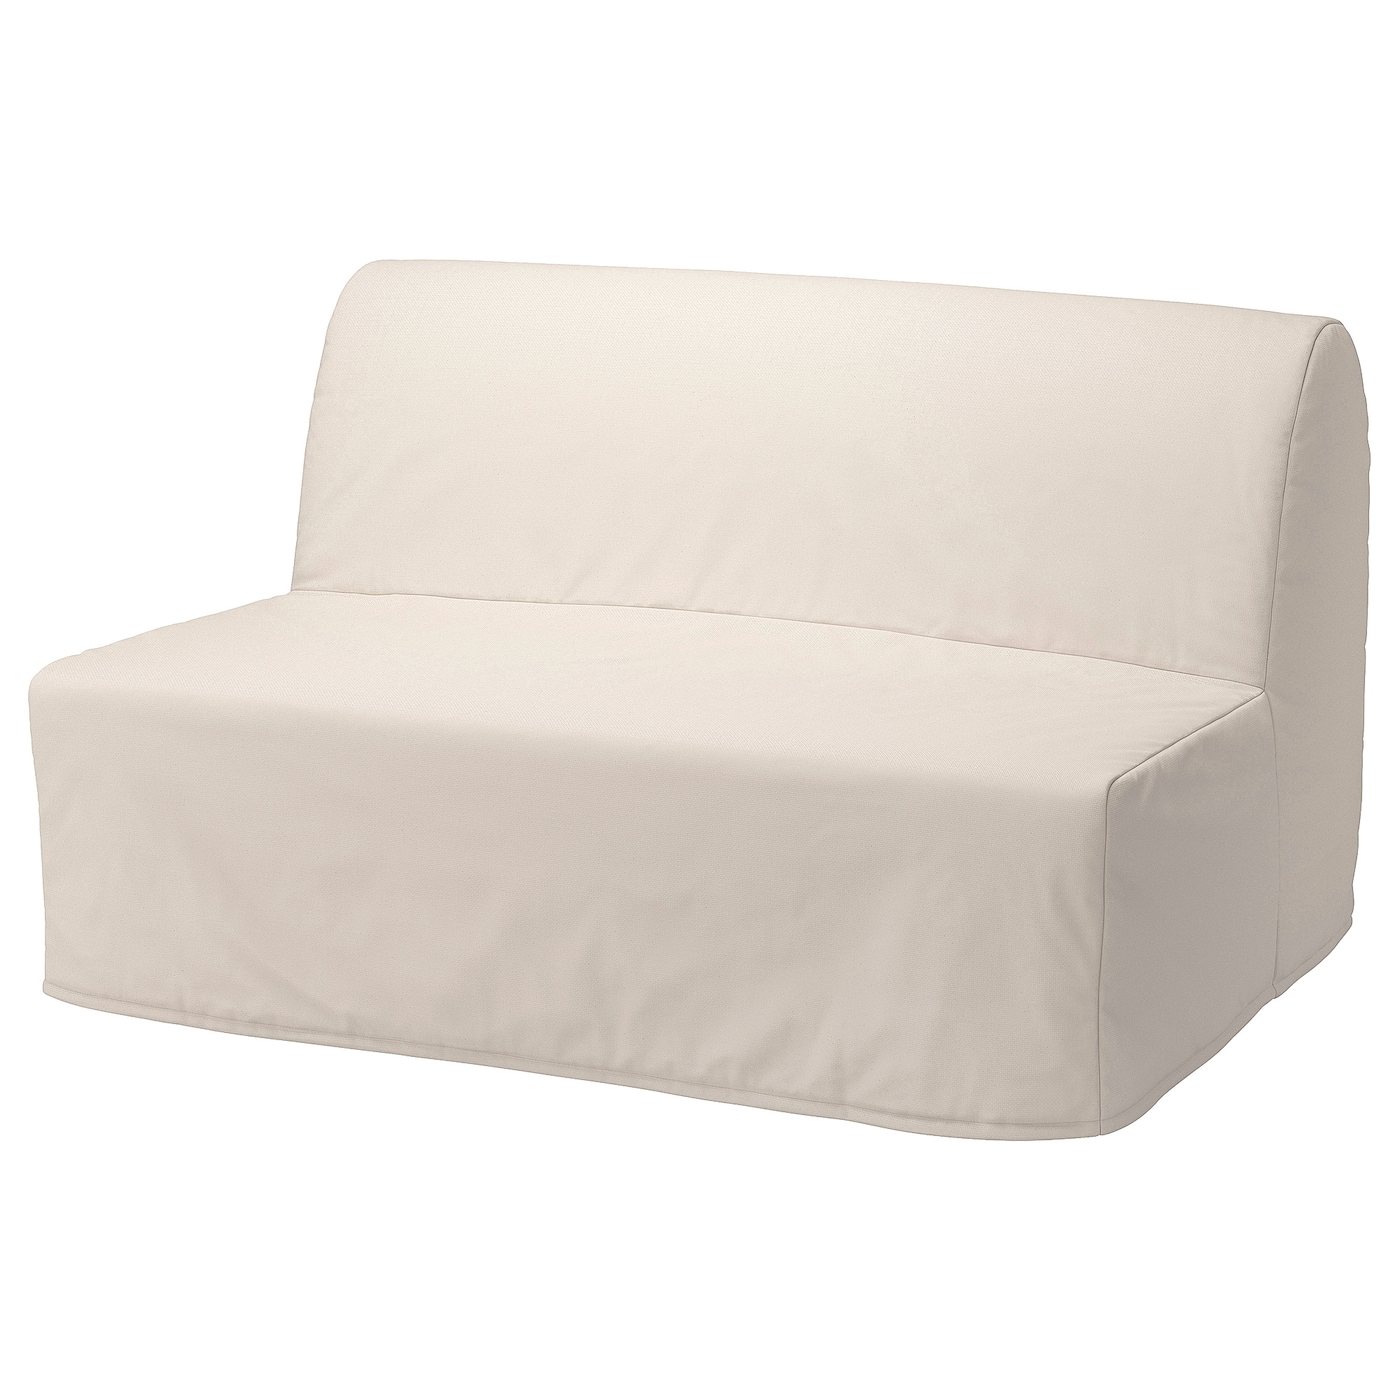 мультяшный матрас ленивый диван кровать подходит для детей татами маты креативный маленький диван кровать стул современная мебель для LYCKSELE MURBO 2-х раскладной диван-кровать, Ранста натуральный цвет IKEA